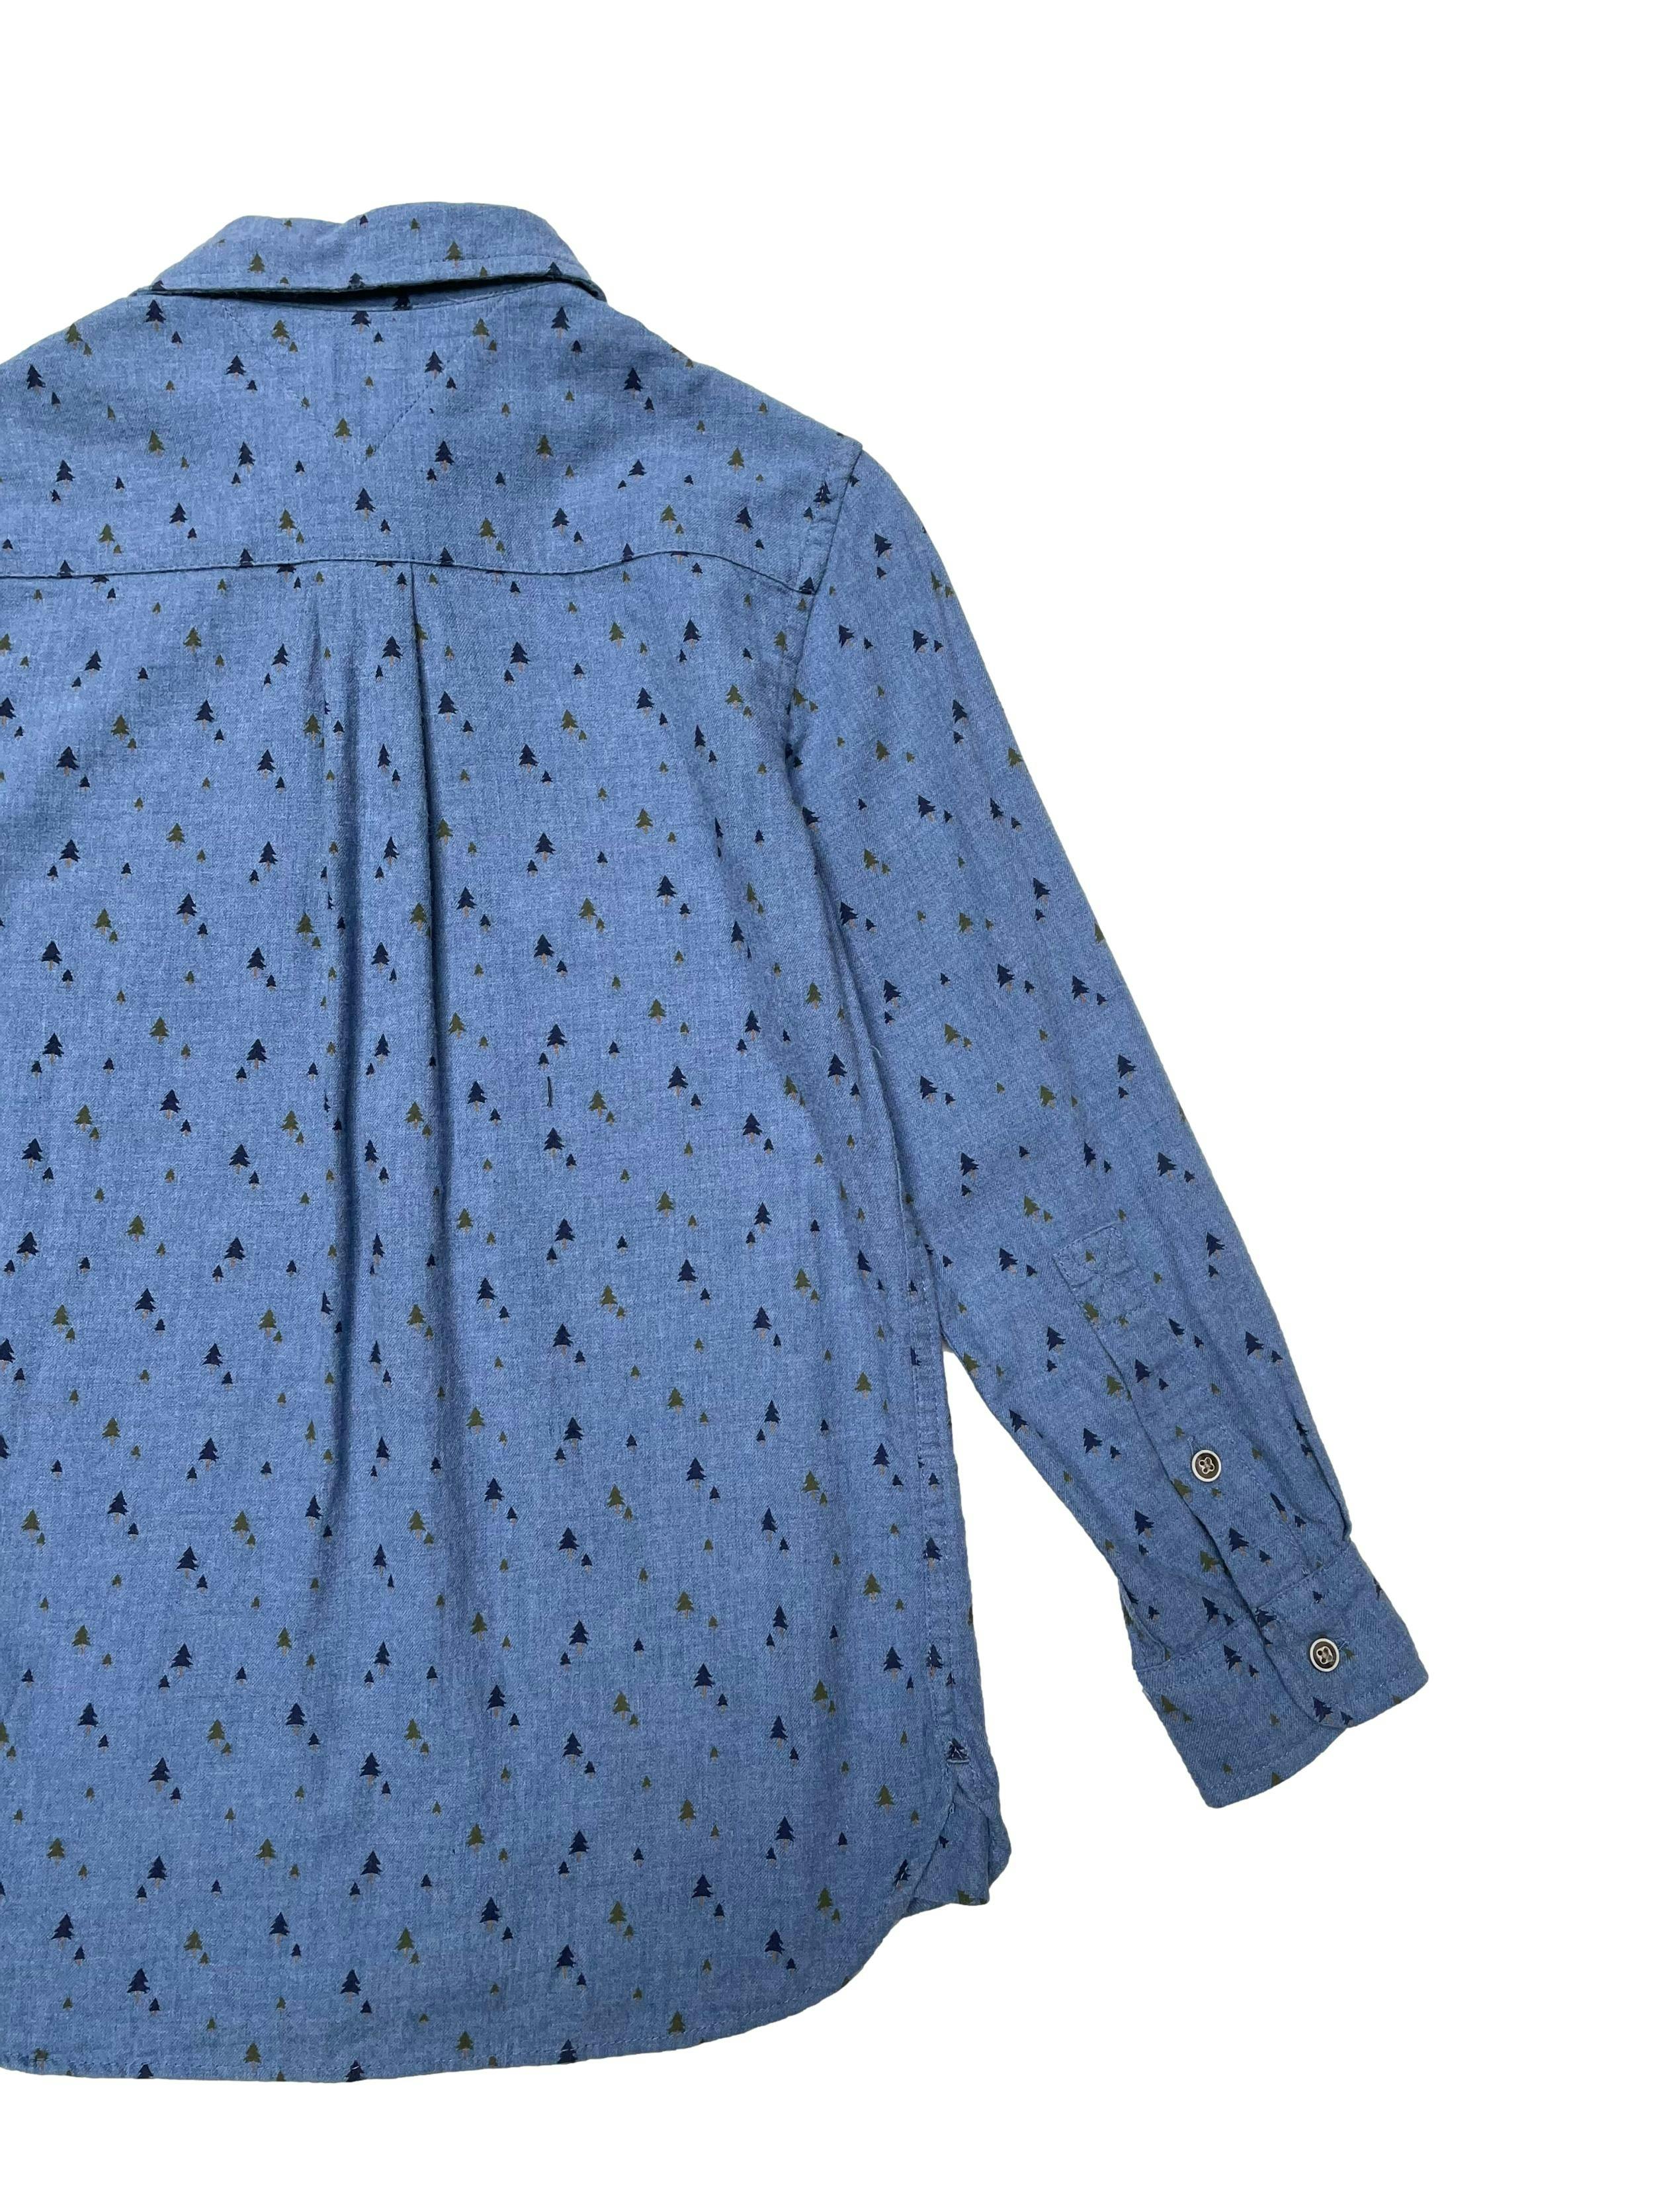 Camisa Tommy Hilfiger 100% algodón azul con estampado de pinos, bolsillo en el pecho y botones delanteros y en puños. Ancho 76cm Largo 50cm. Precio original S/ 239